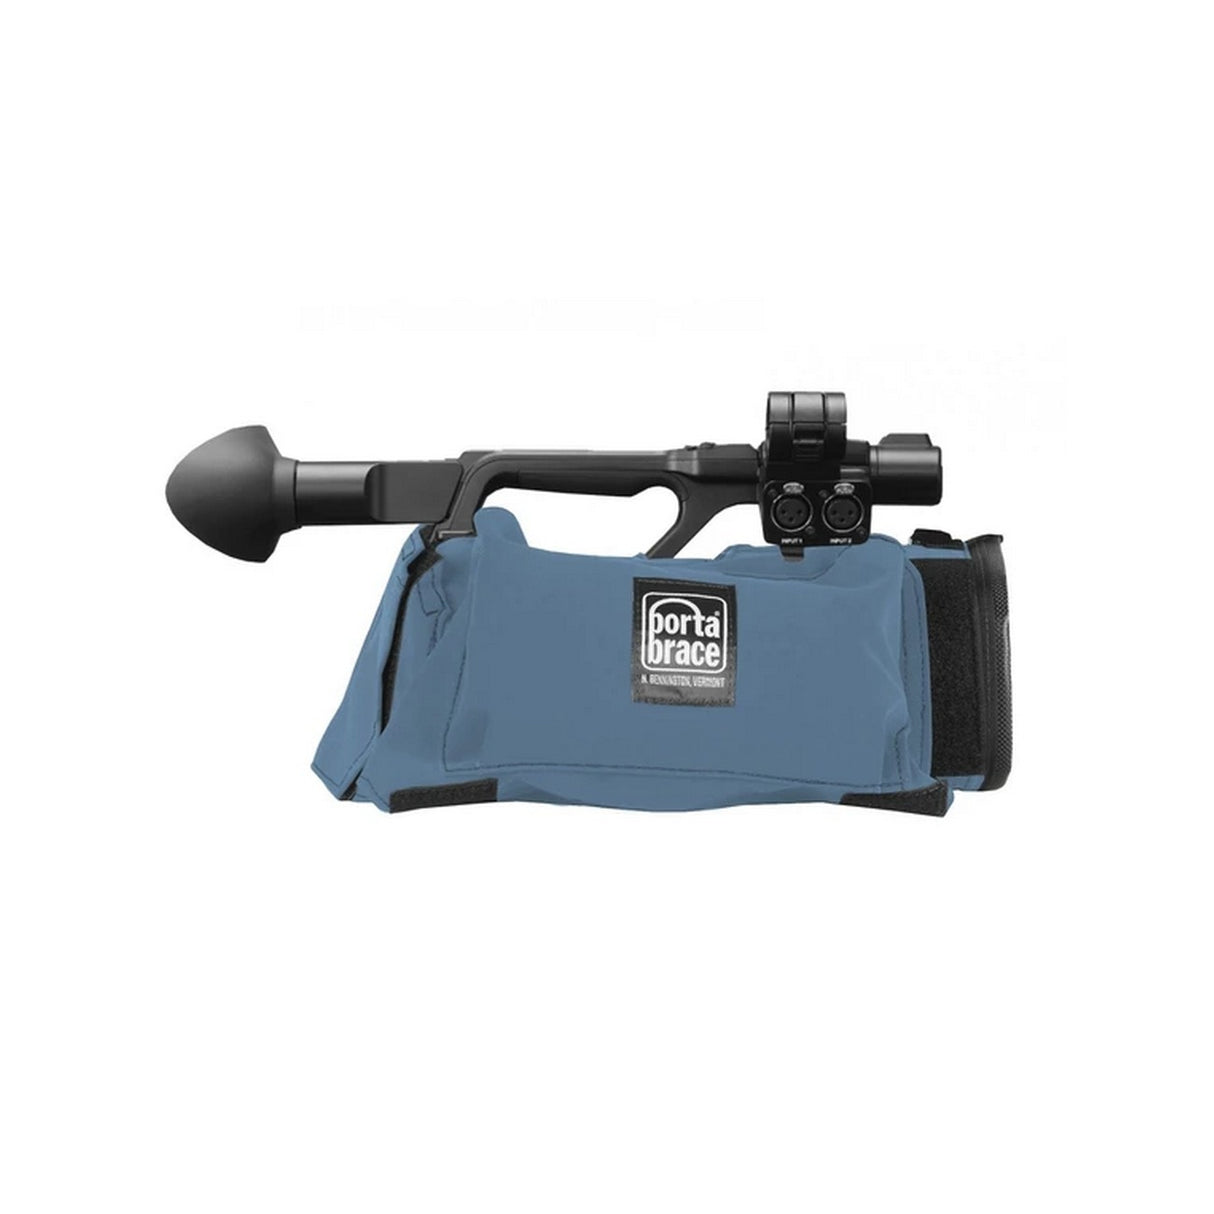 PortaBrace CBA-PXWZ190 Camera Body Armor Case for Sony PXW-Z190, Blue